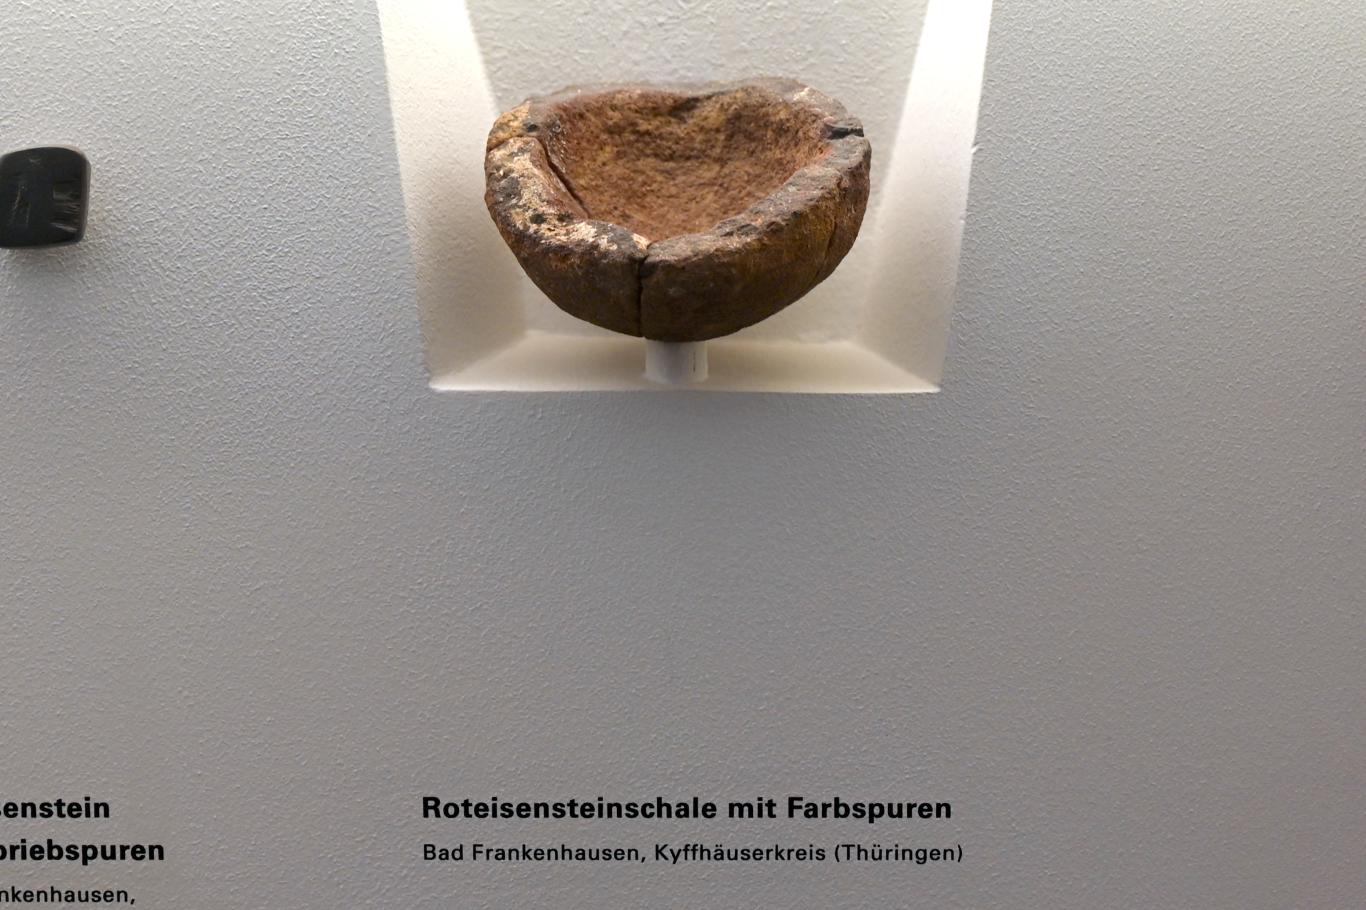 Roteisensteinschale mit Farbspuren, Magdalénien, 13000 - 10000 v. Chr.